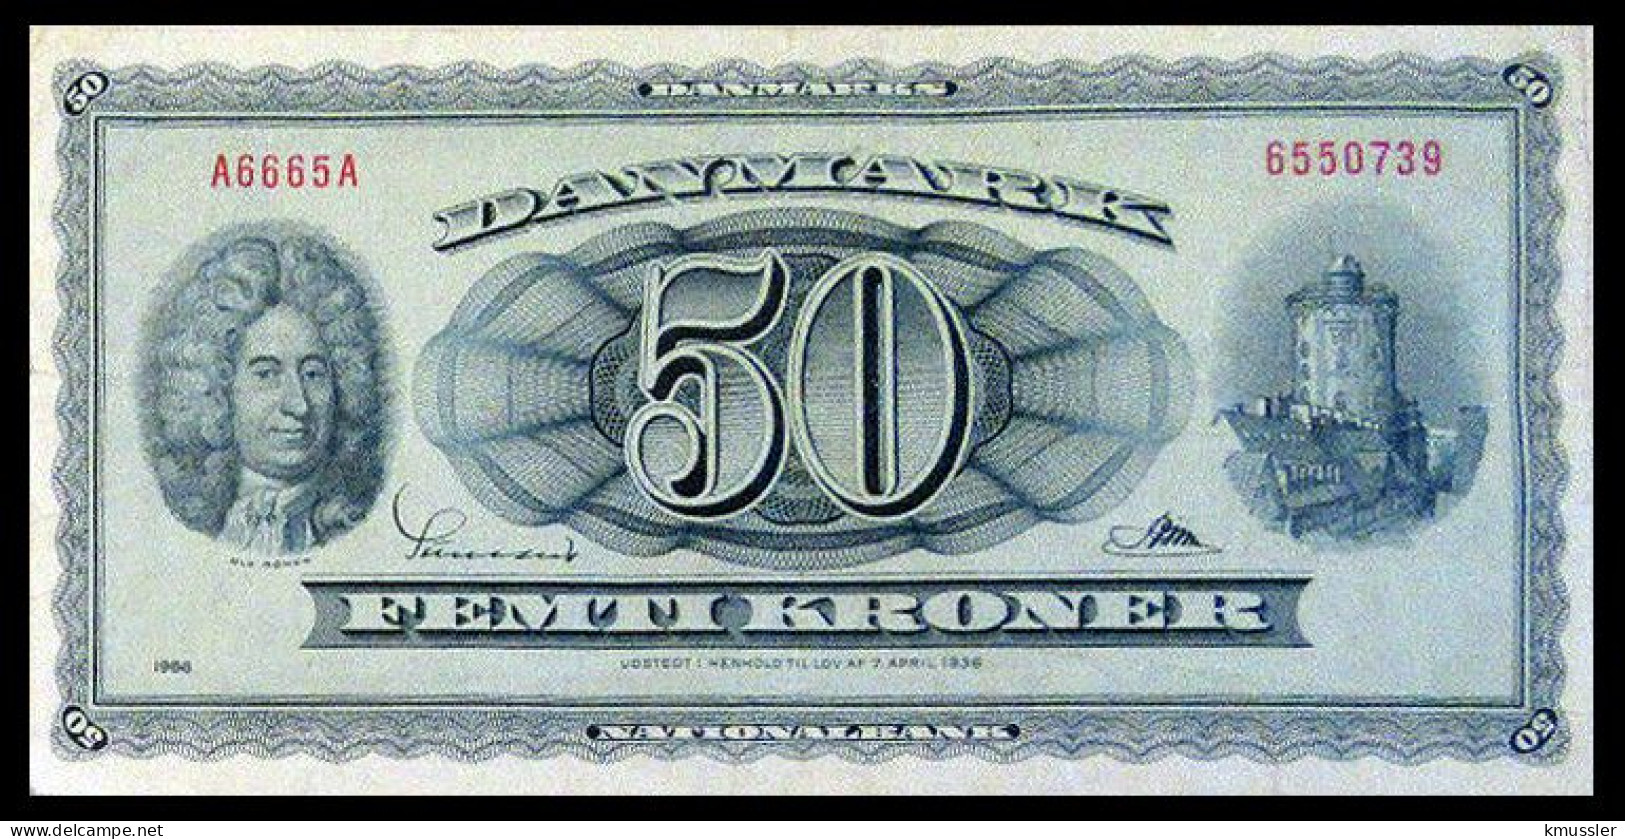 # # # Banknote Dänemark (Denmark) 50 Kroner 1936 # # # - Danemark